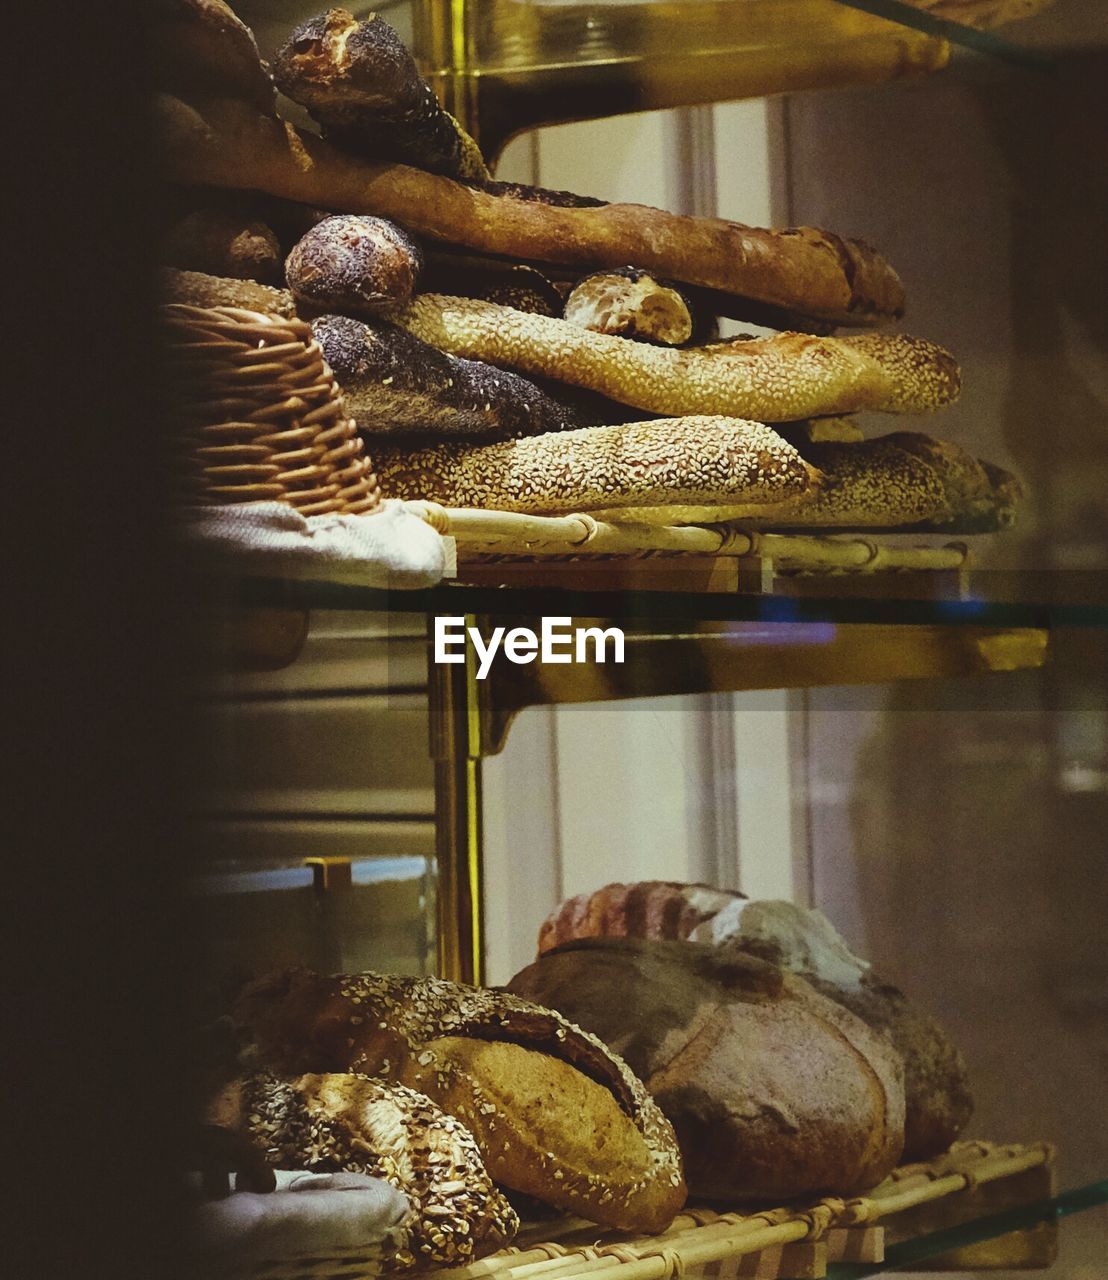 Breads on shelves at bakery